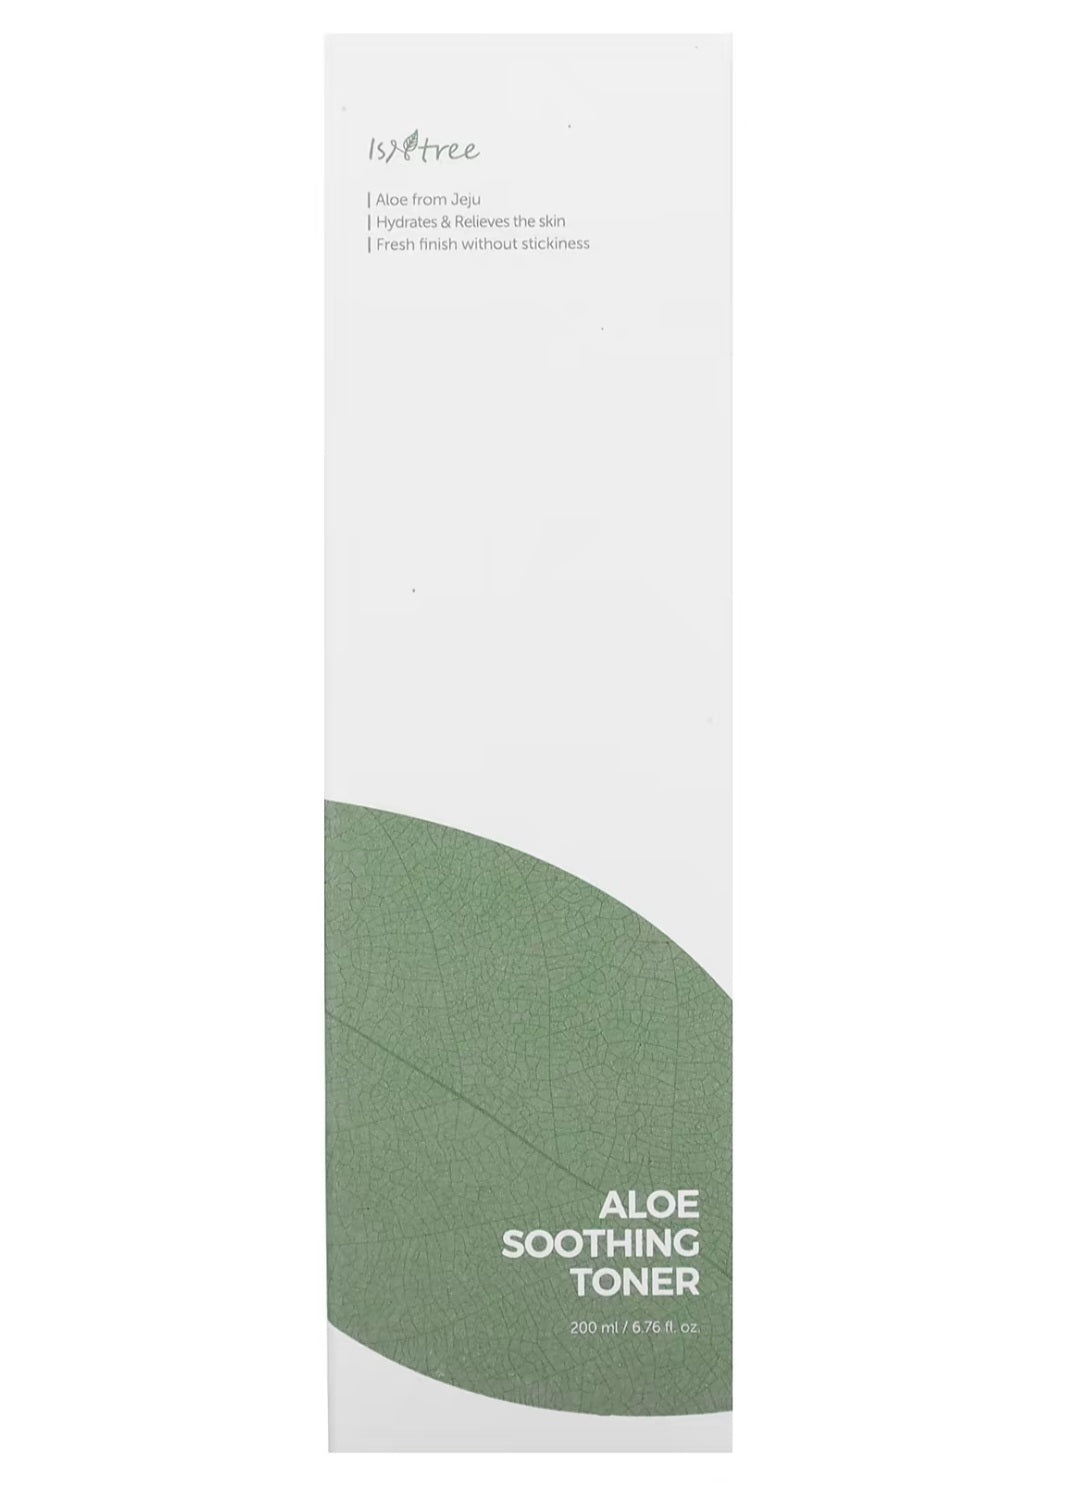 Isntree

Aloe Soothing Toner, 6.76 fl oz (200 ml)